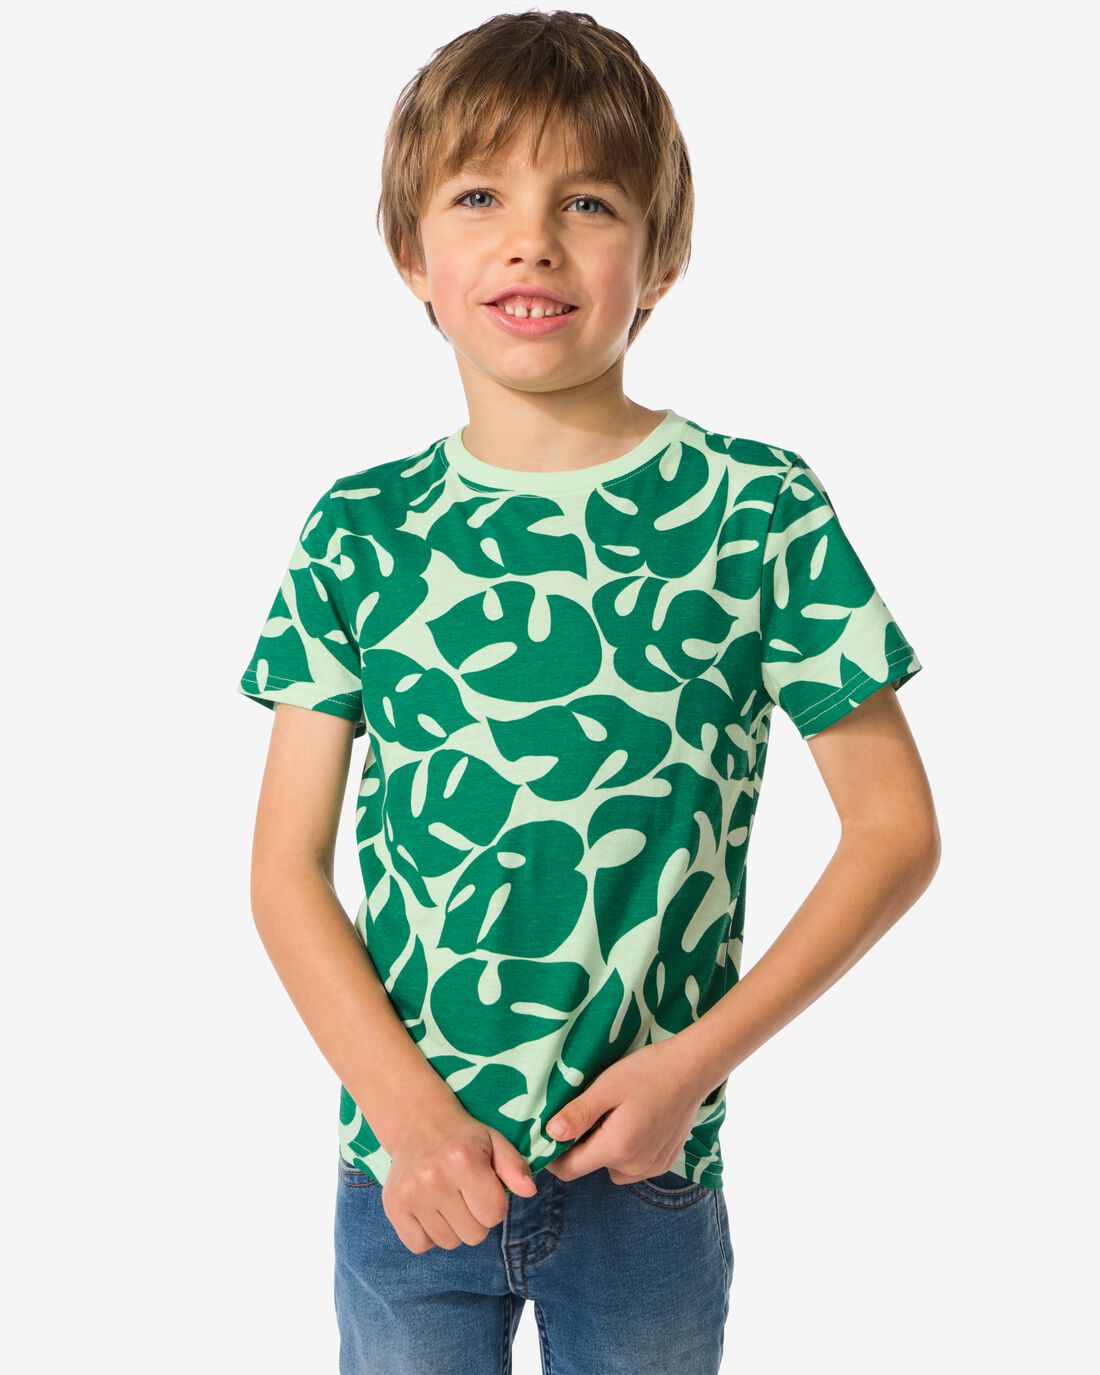 HEMA Kinder T-shirt Bladeren Groen (groen)